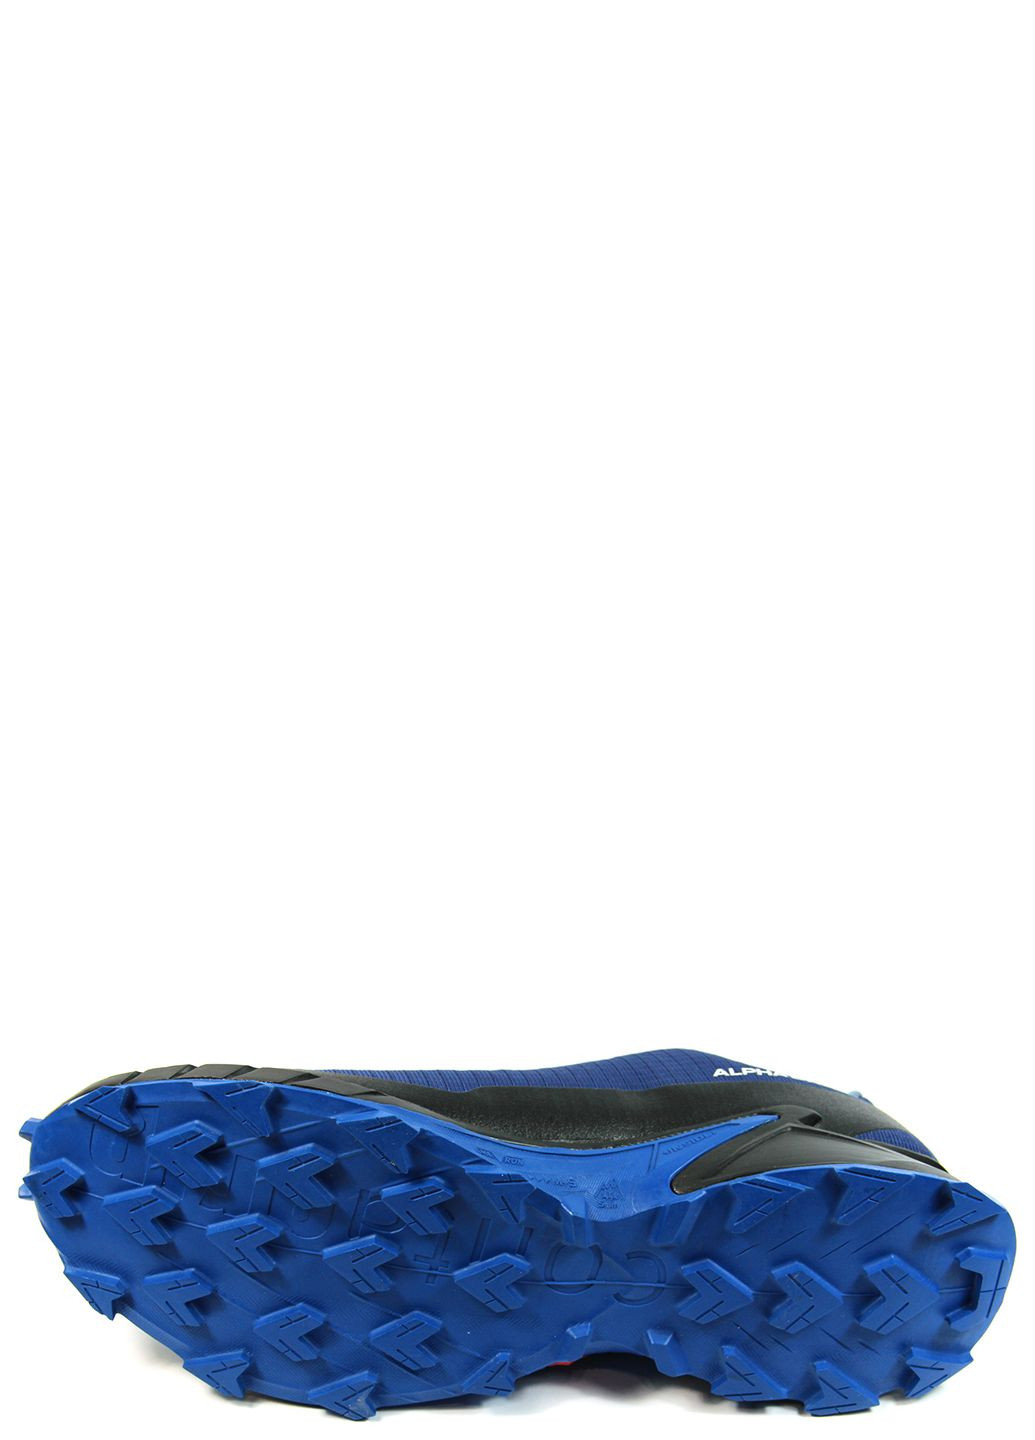 Синие демисезонные мужские кроссовки alphacross 5 gtx 473092 Salomon